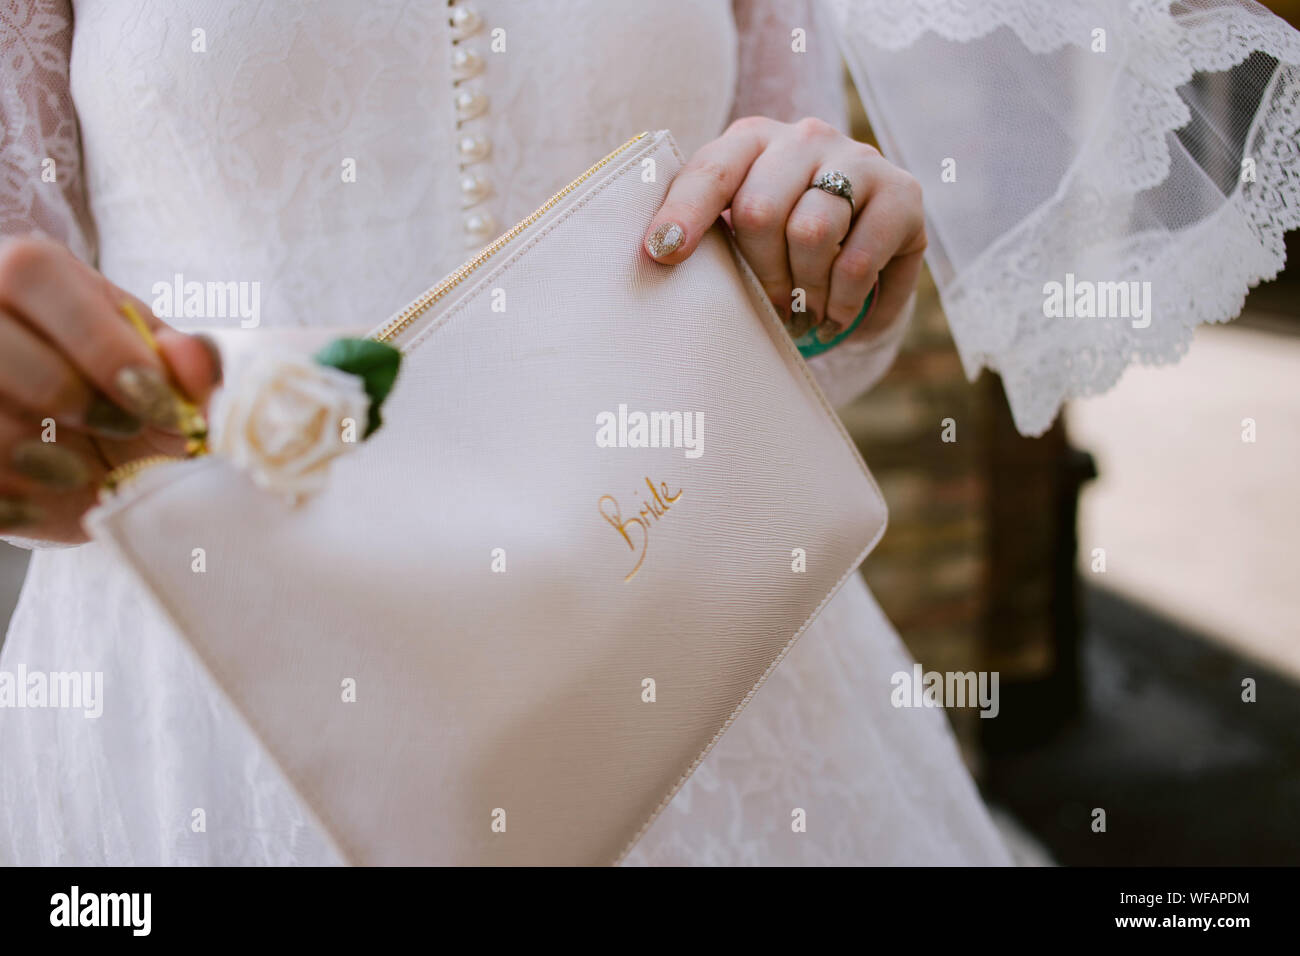 detalle de la novia en su día de la boda sosteniendo una bolsa del embrague con la novia escrita en ella Foto de stock